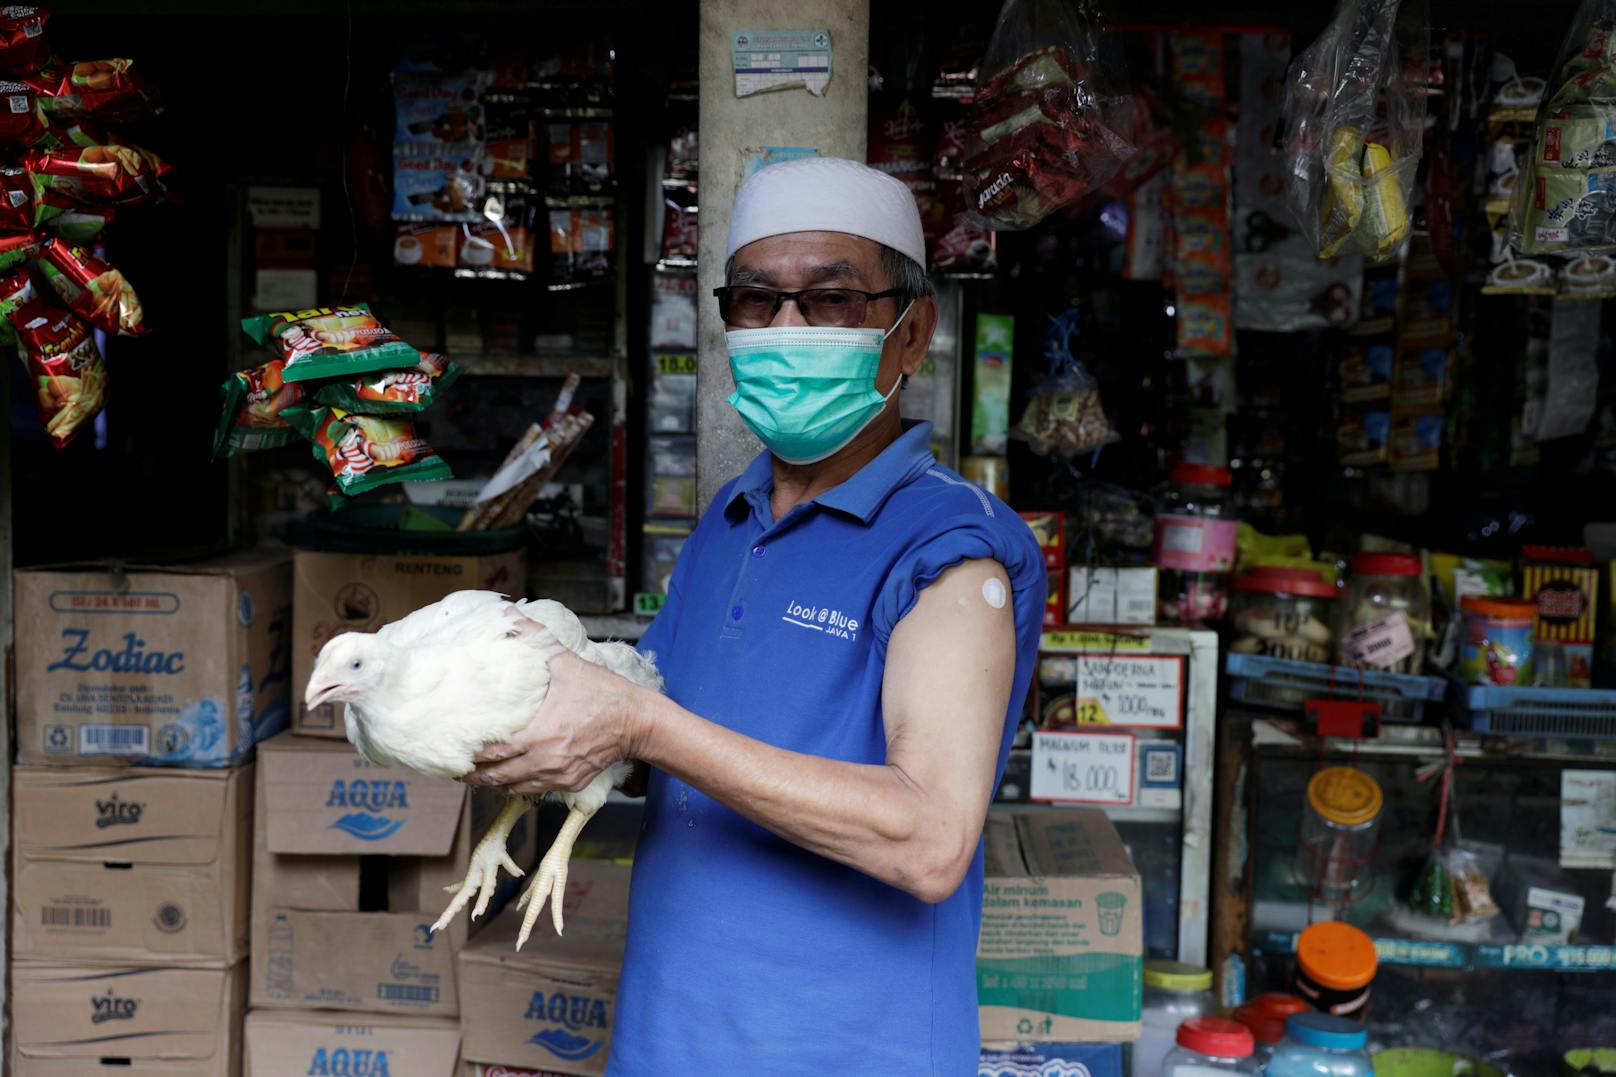 In der indonesischen Stadt Cianjur bekommen alle über 45 Jahren ein lebendiges Huhn, <a href="https://edition.cnn.com/2021/06/17/asia/indonesia-town-chickens-vaccinated-intl-hnk-scli/index.html" target="_blank">das berichtet der US-amerikanische Sender CNN</a>. Insgesamt 500 Hühner seien an ältere Menschen verschenkt worden. In Indonesien steigt die Zahl der Corona-Neuinfektionen rasant an.&nbsp;